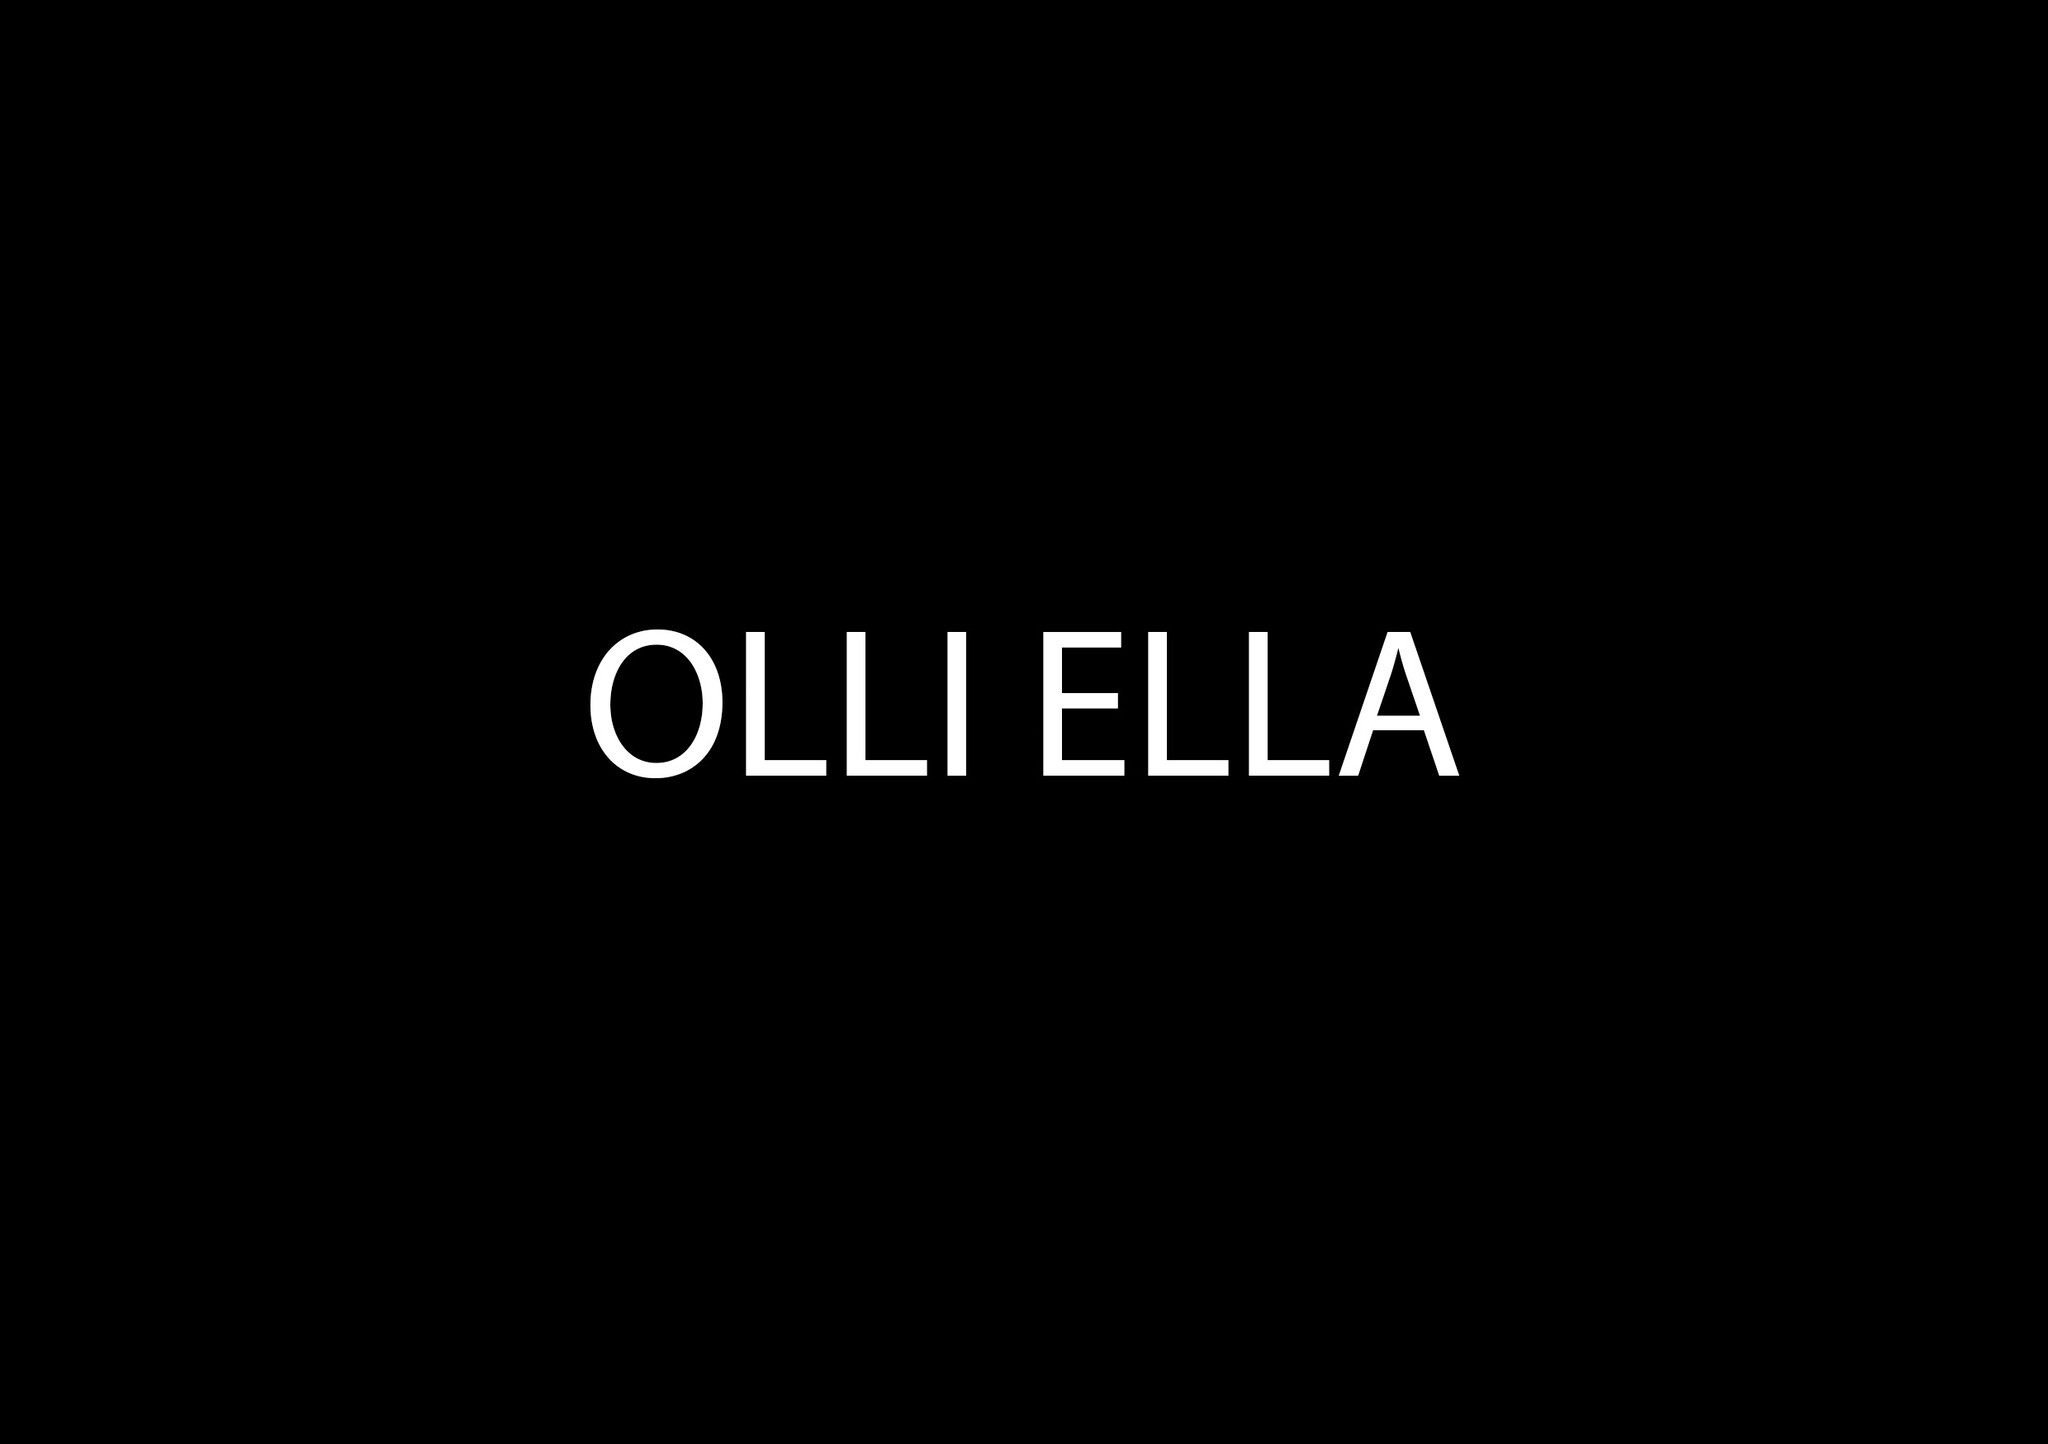 Olli Ella